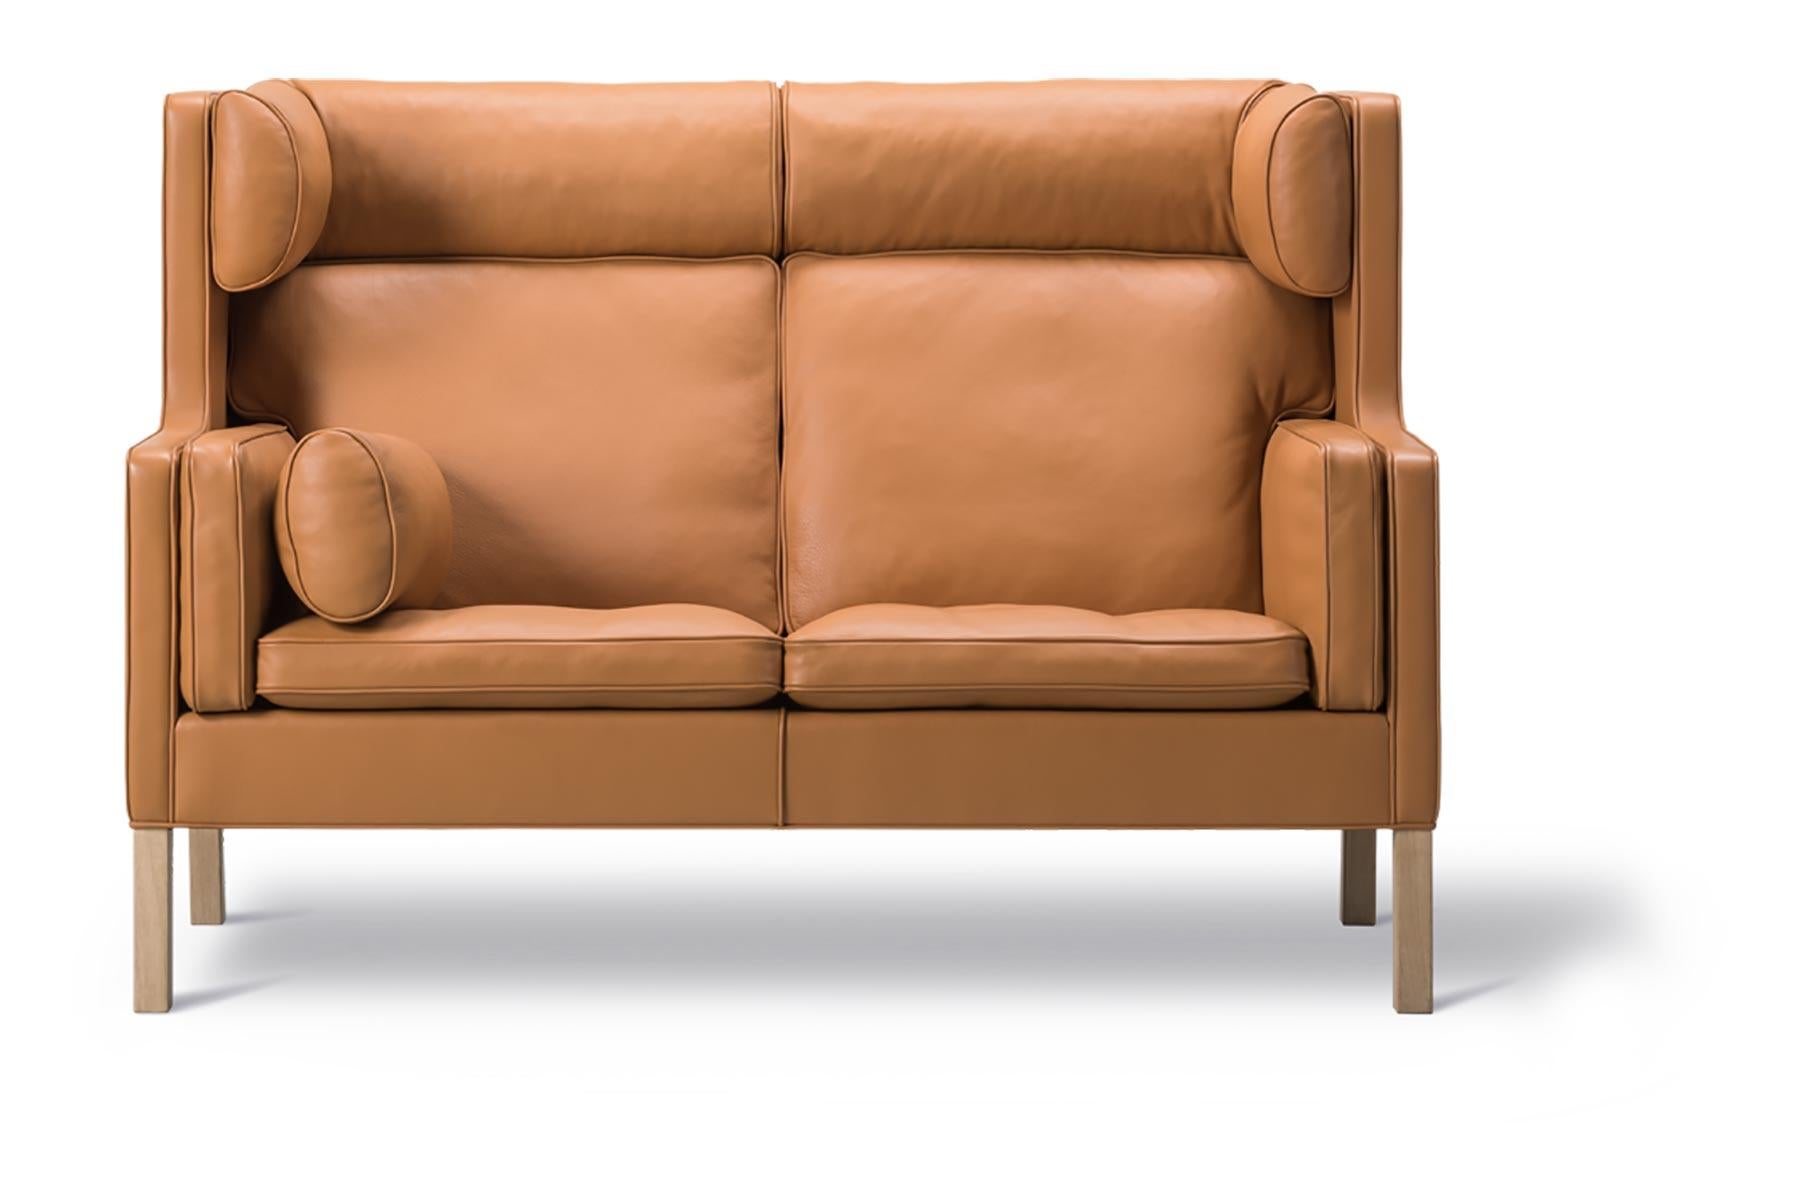 Das 1971 entworfene Coupé-Sofa hat eine hohe, umhüllende Rückenlehne mit Flügeln, die einen ruhigen Rückzugsort in größeren Räumen oder einen gemütlichen Platz vor einem Kamin bietet.